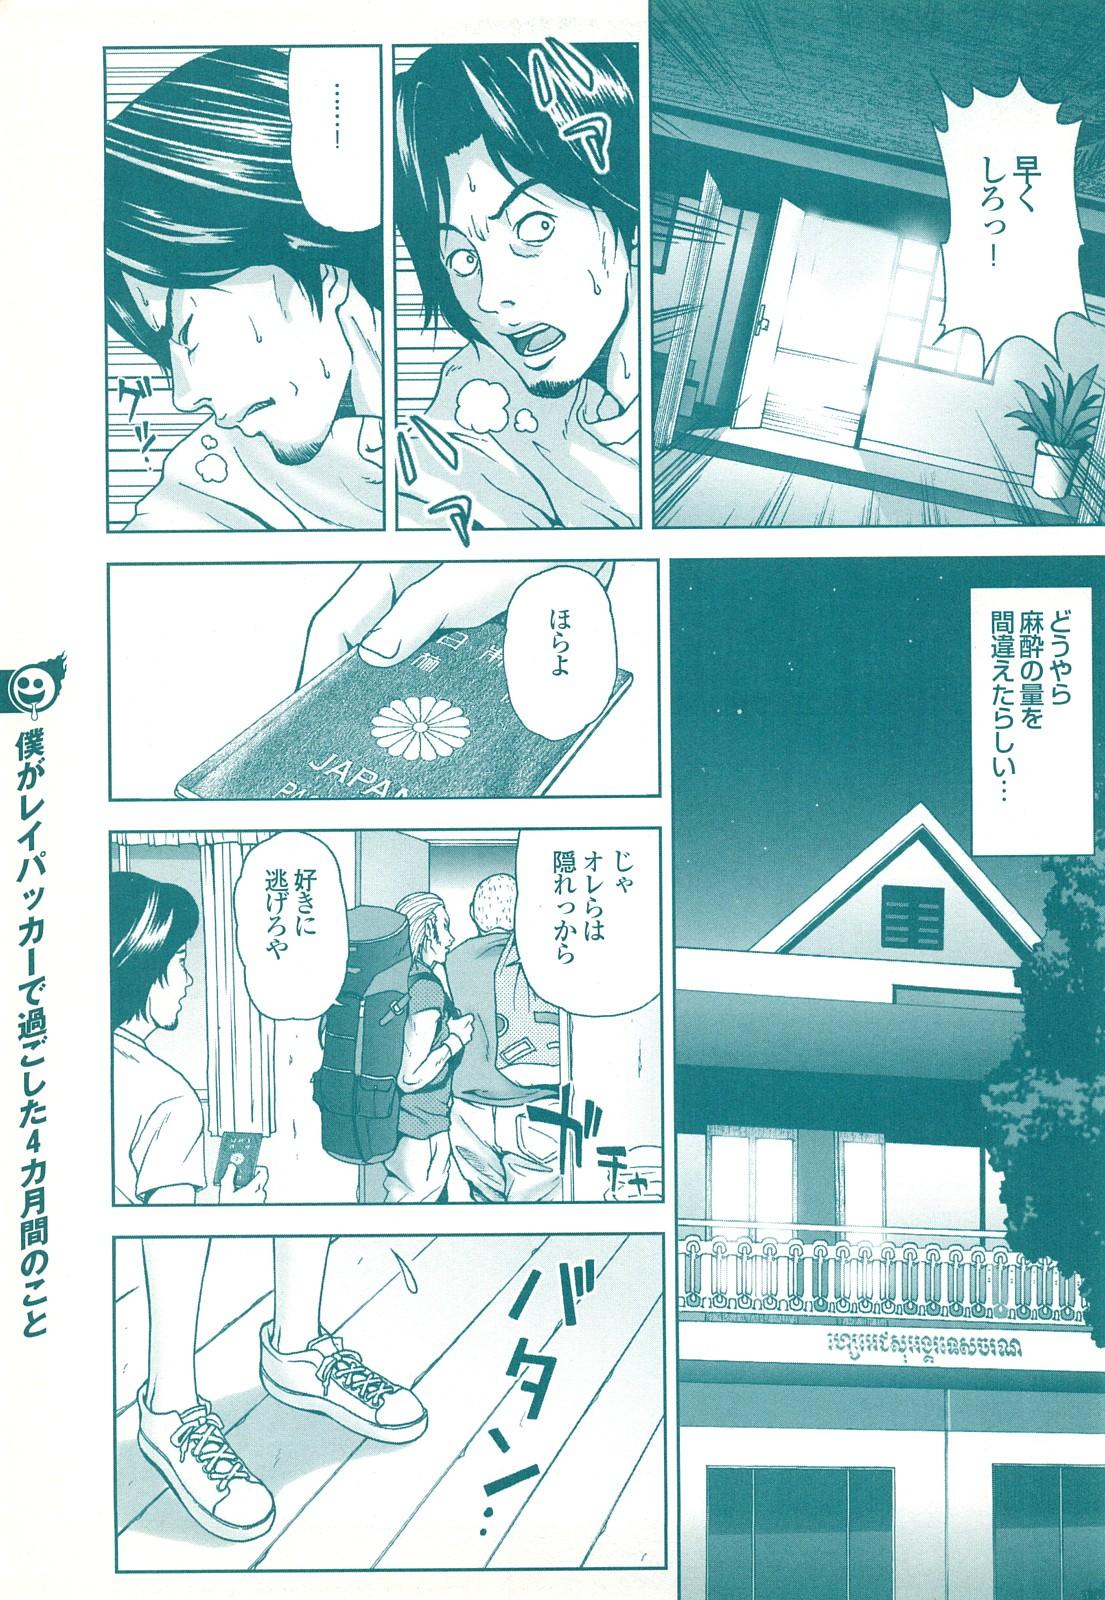 コミック裏モノJAPAN Vol.18 今井のりたつスペシャル号 138